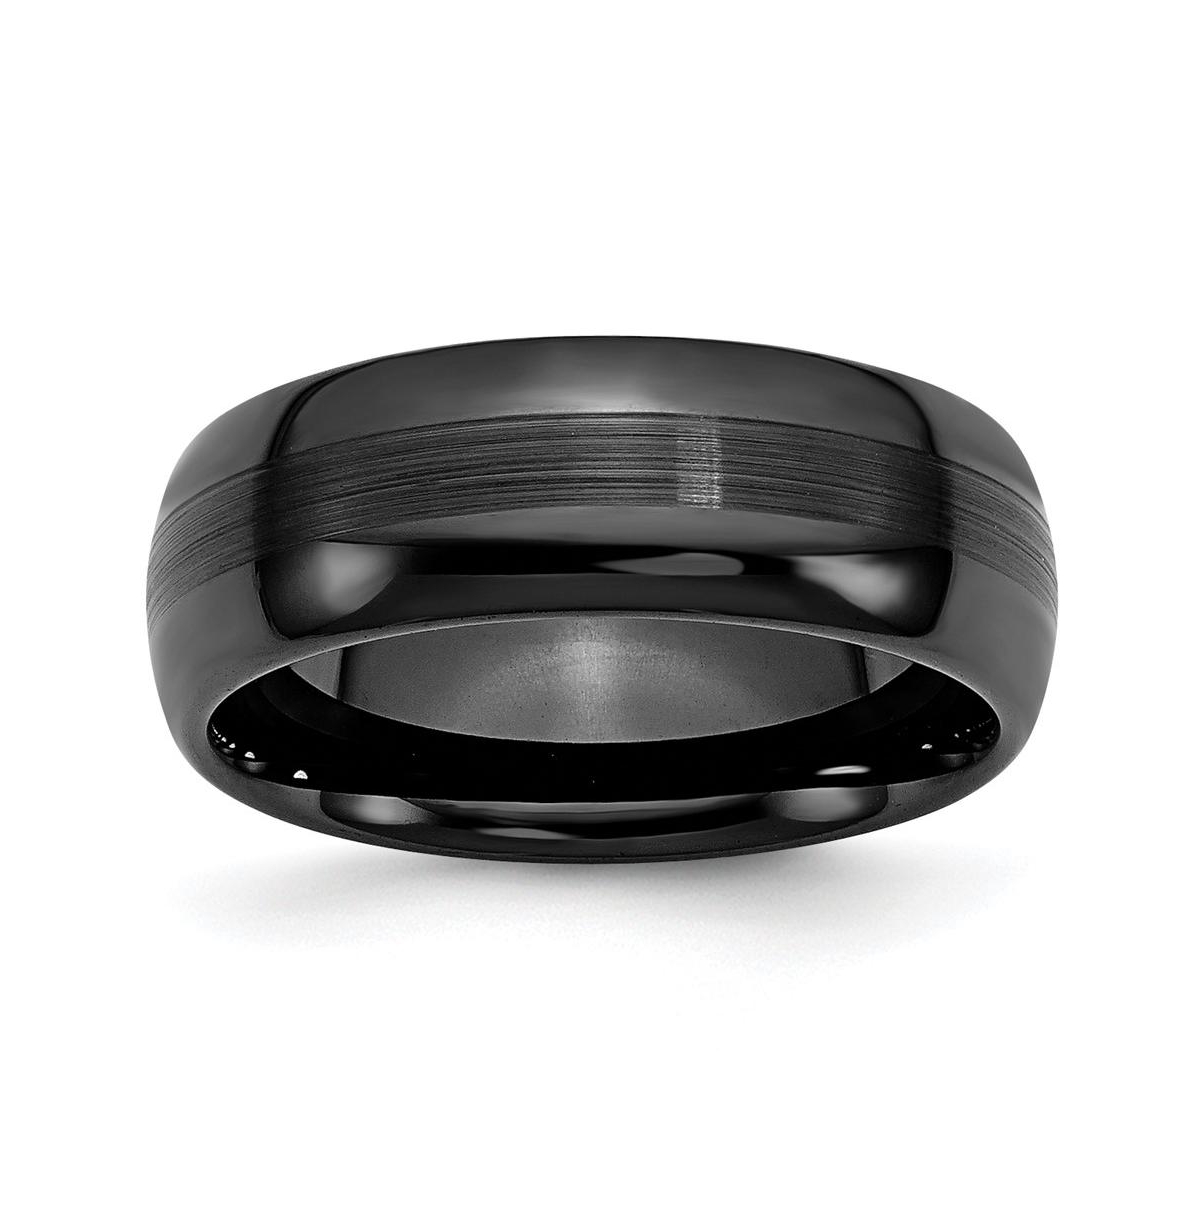 Ceramic Black Brushed and Polished Wedding Band Ring - Black